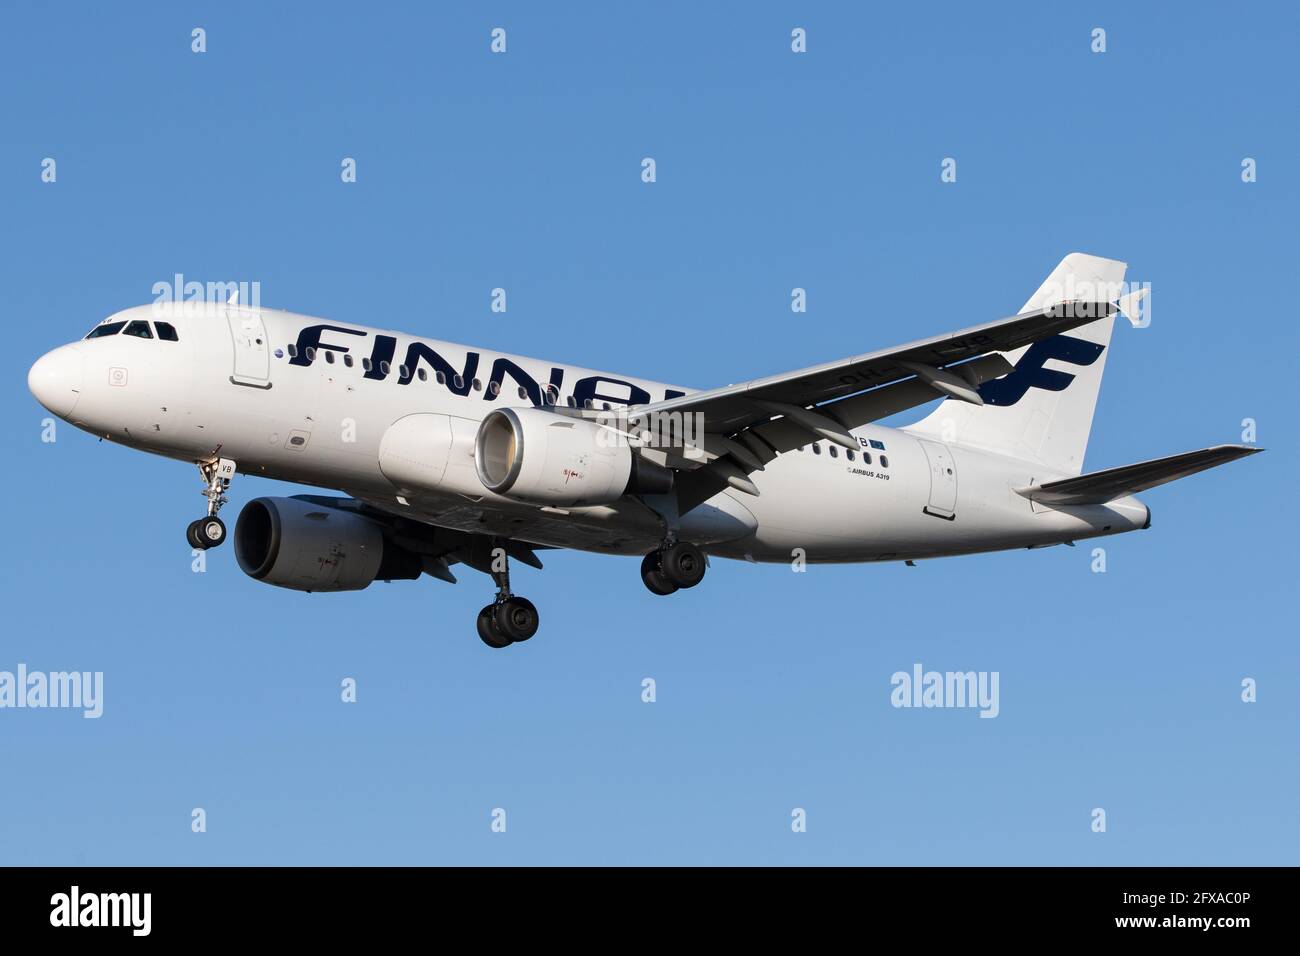 LONDRA, REGNO UNITO - 11 febbraio 2020: Finnair (AY / fin) si avvicina all'aeroporto Heathrow di Londra (EGLL/LHR) con un Airbus A319 (OH-LVB/1107). Foto Stock